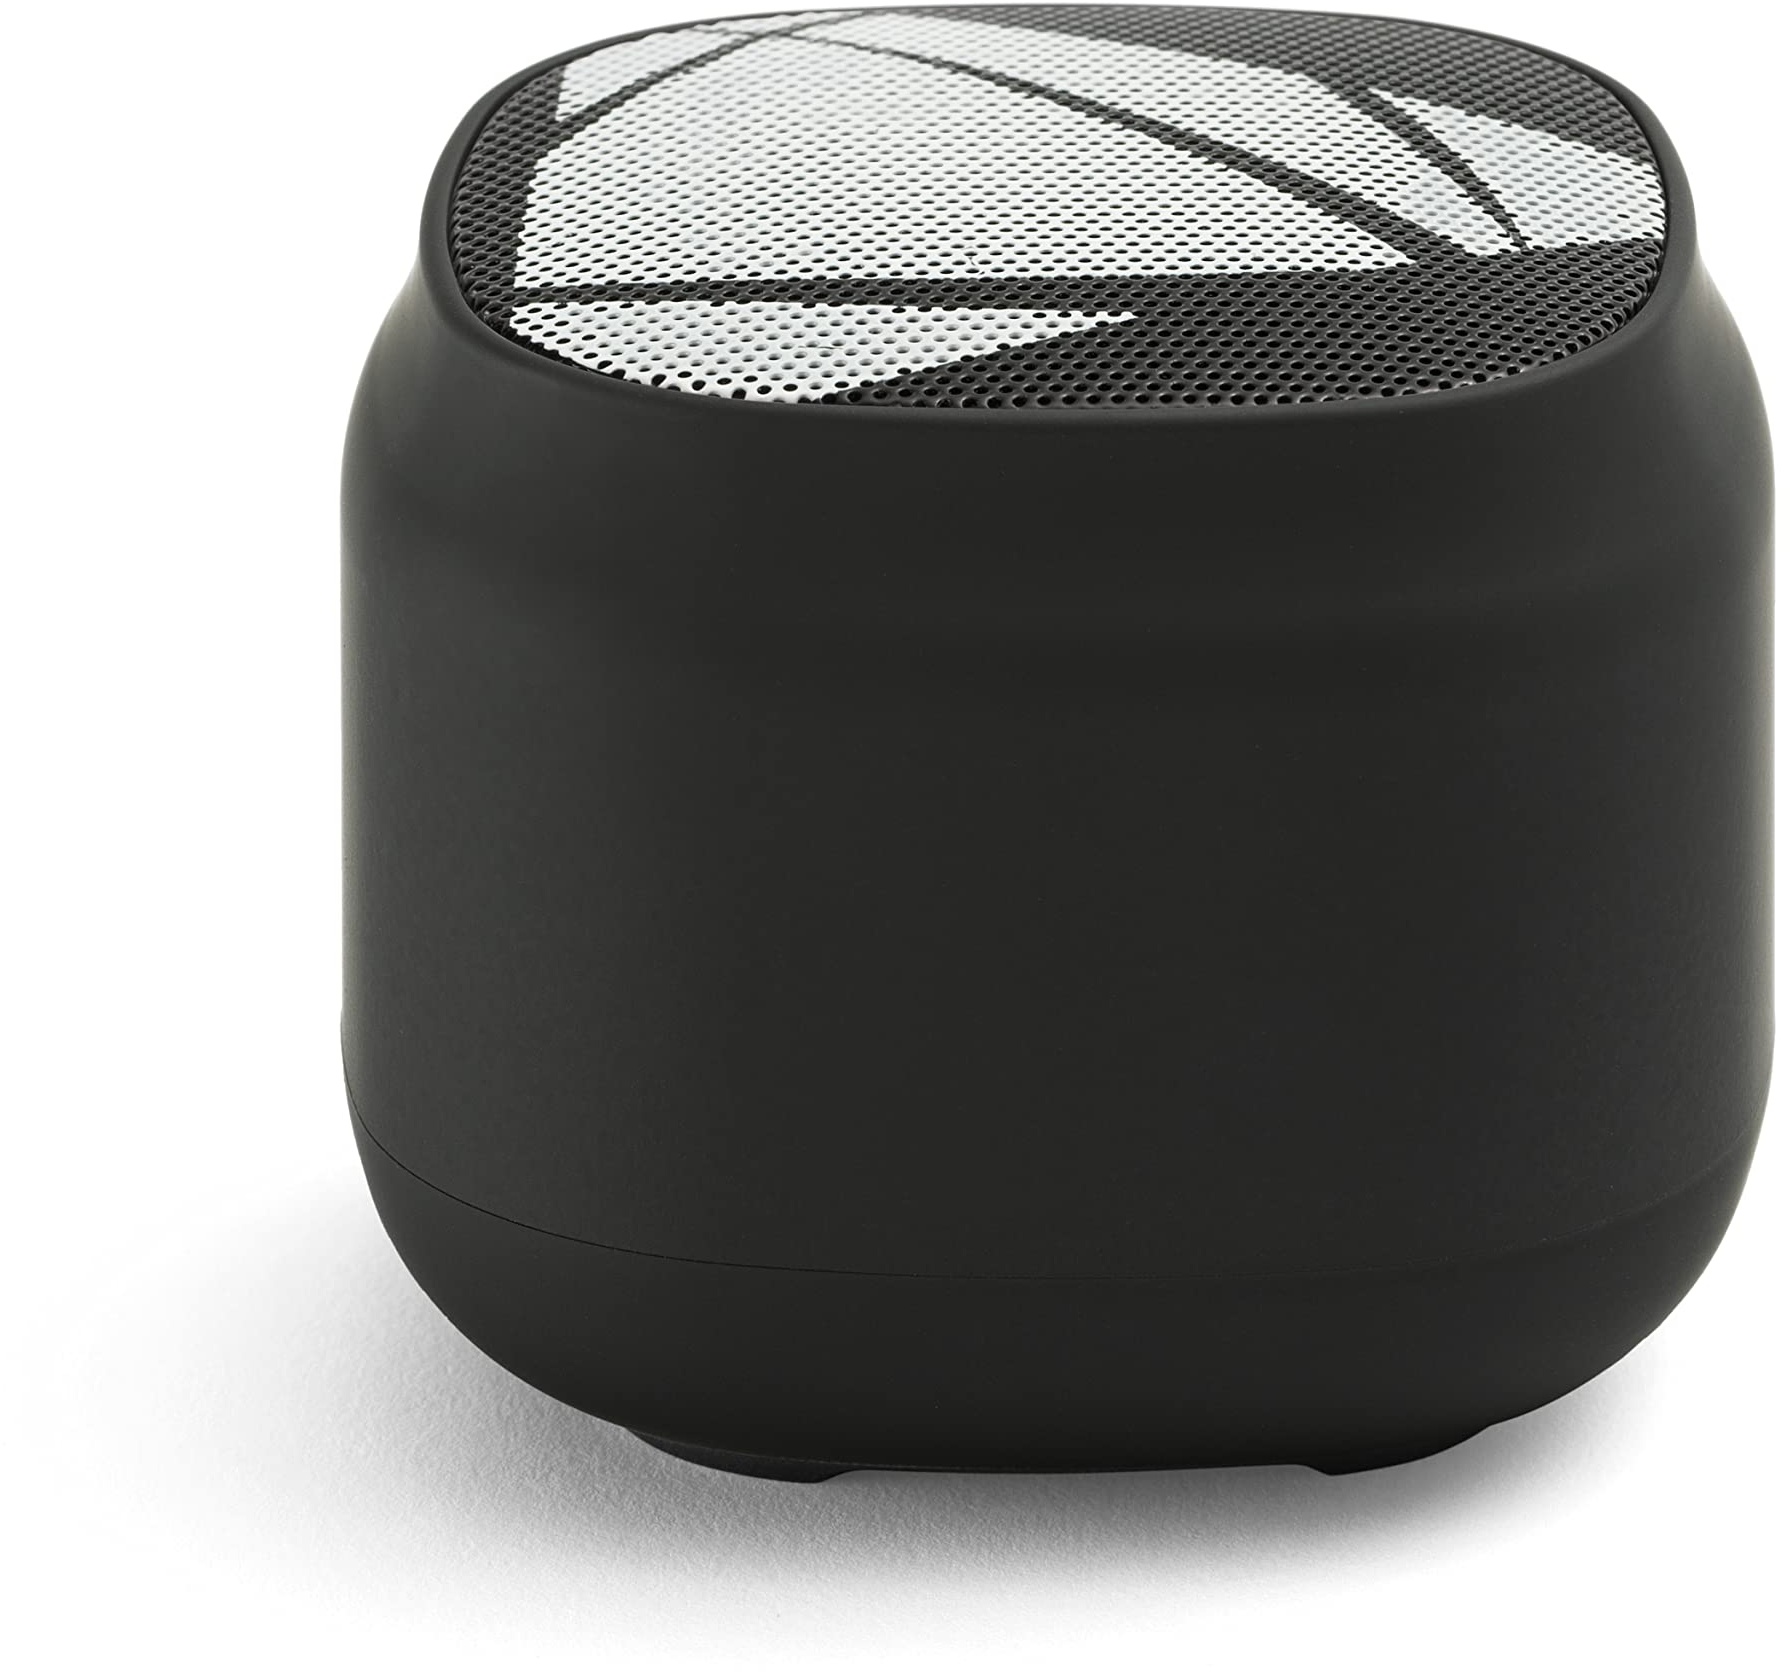 Music Sound | Speaker Mini | Tragbarer Bluetooth 5.0-Lautsprecher - 3 Watt Leistung - Bluetooth-Reichweite 10 Mt. Akkulaufzeit 4h und Ladezeit 2h - Farbe Schwarz, Unica